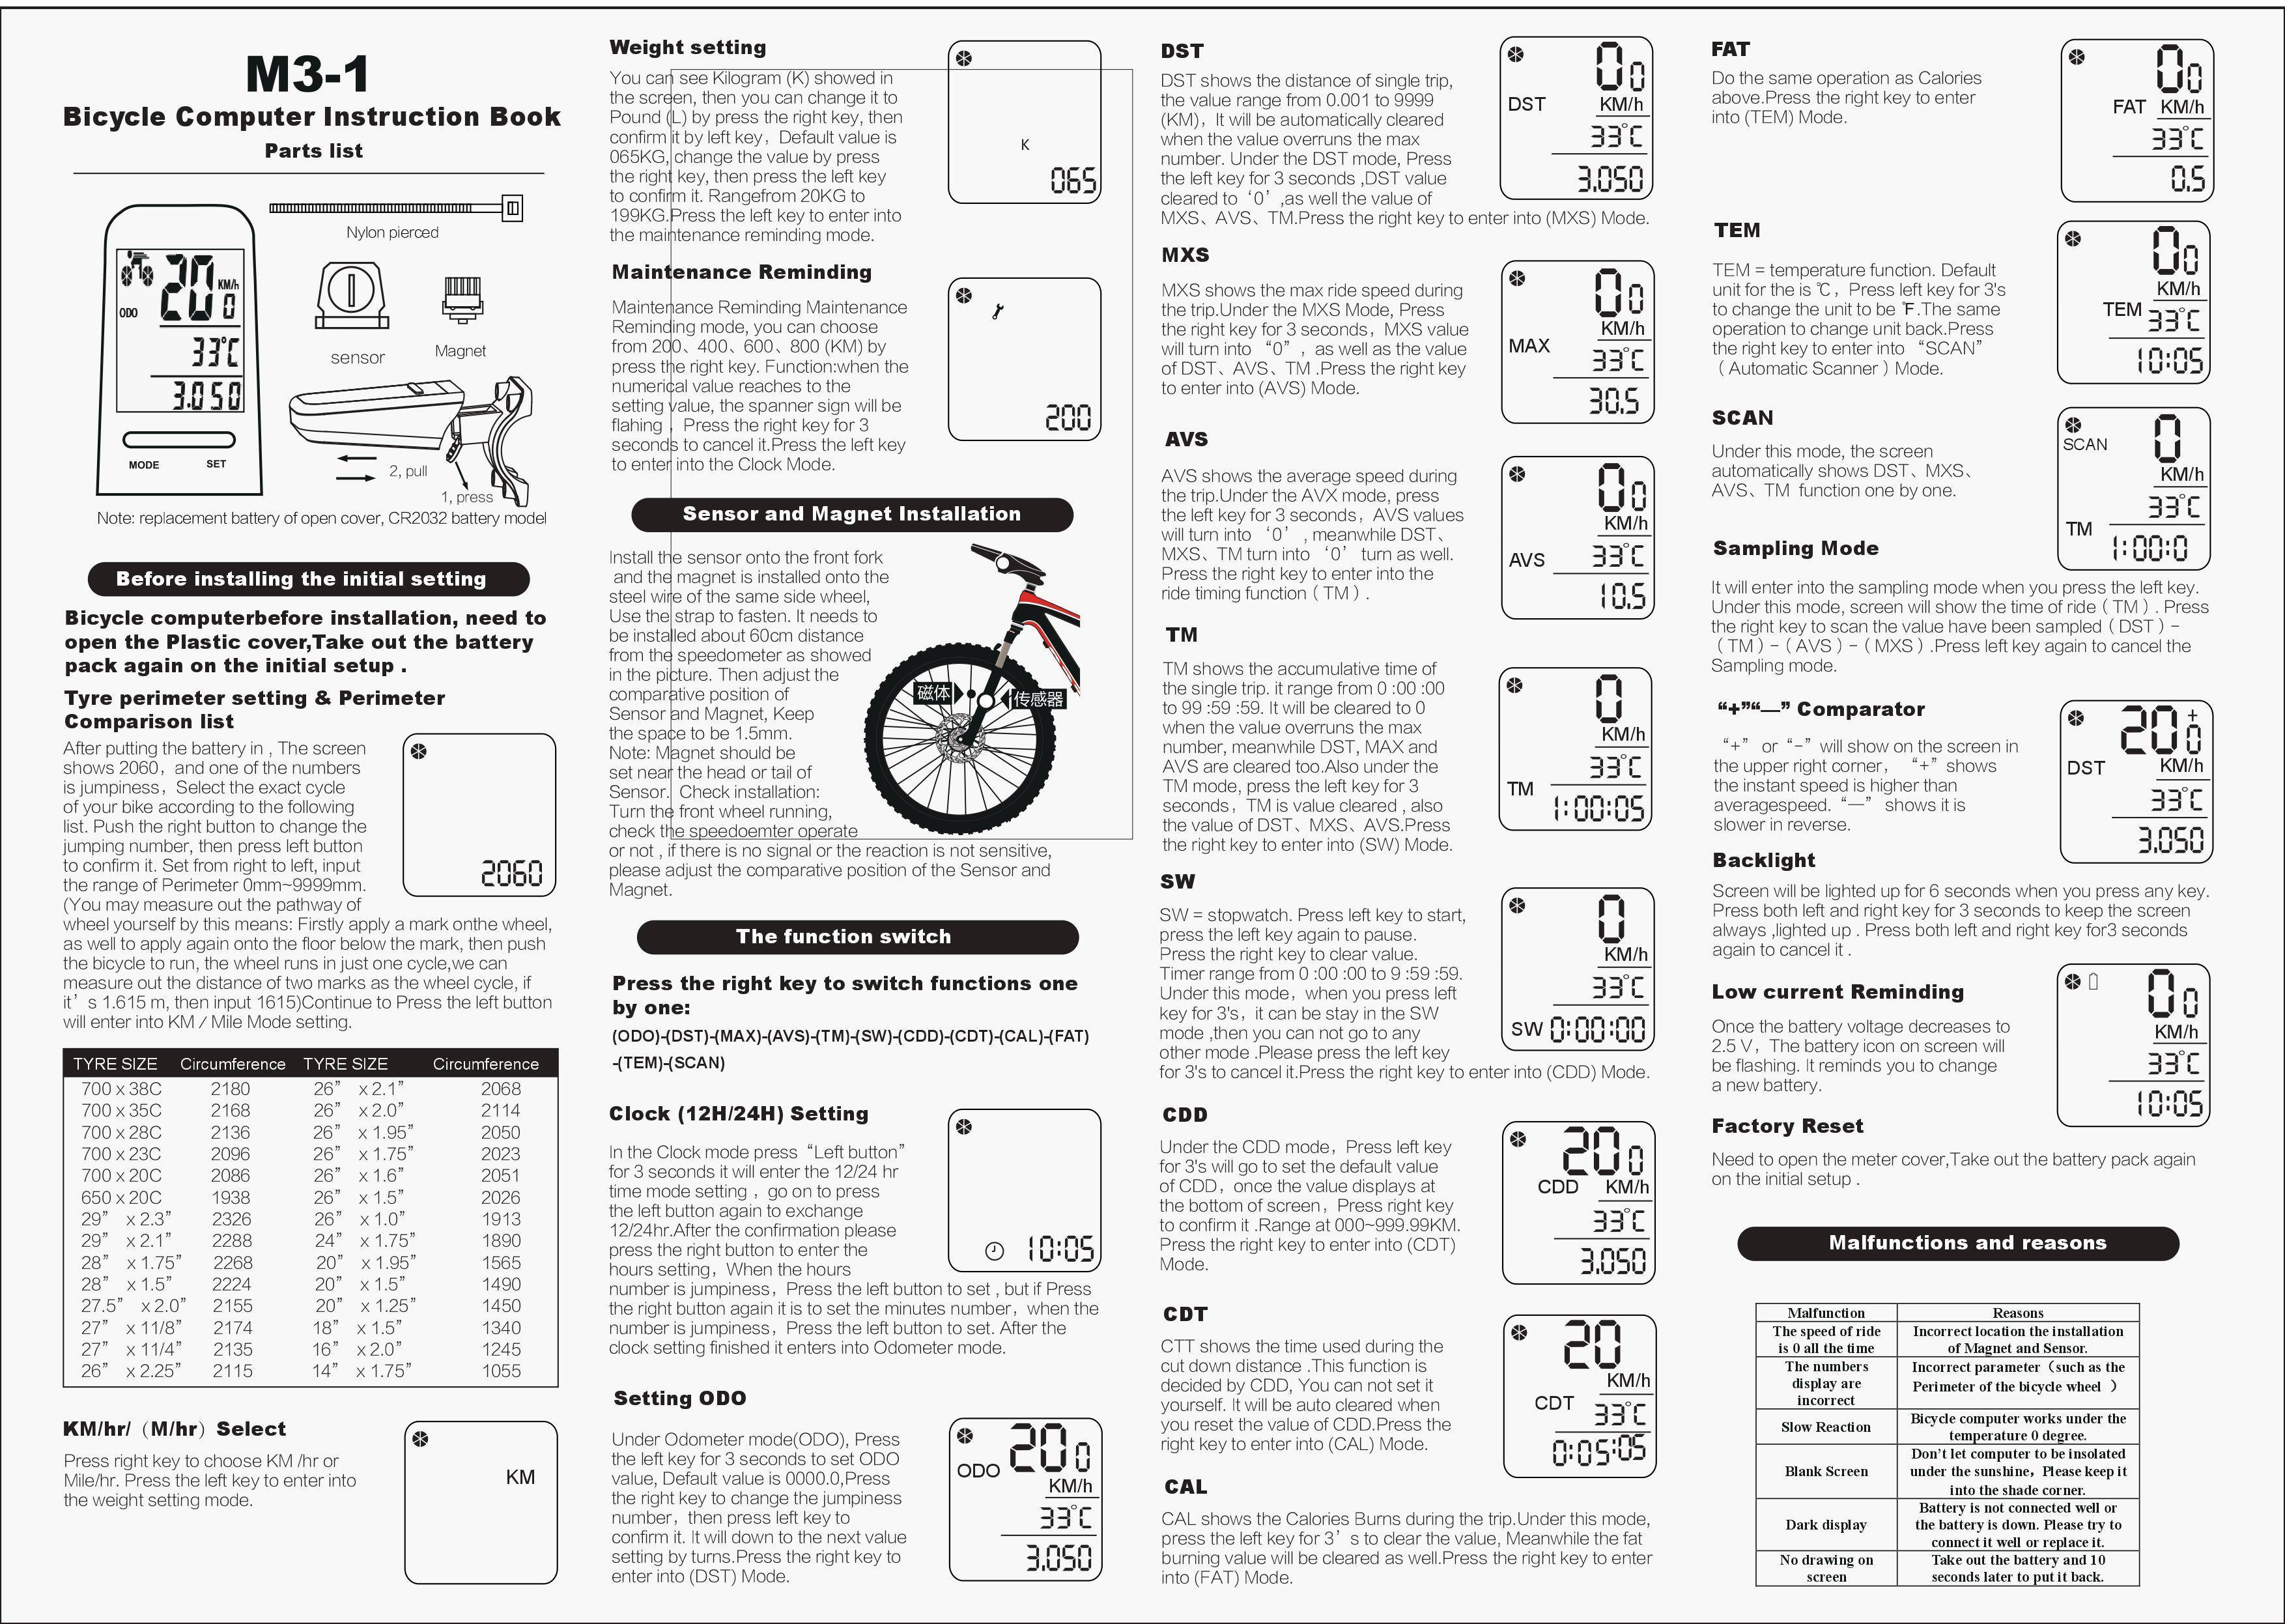 Как установить велокомпьютер на велосипед, фото / установка приборов и устройств на велосипед